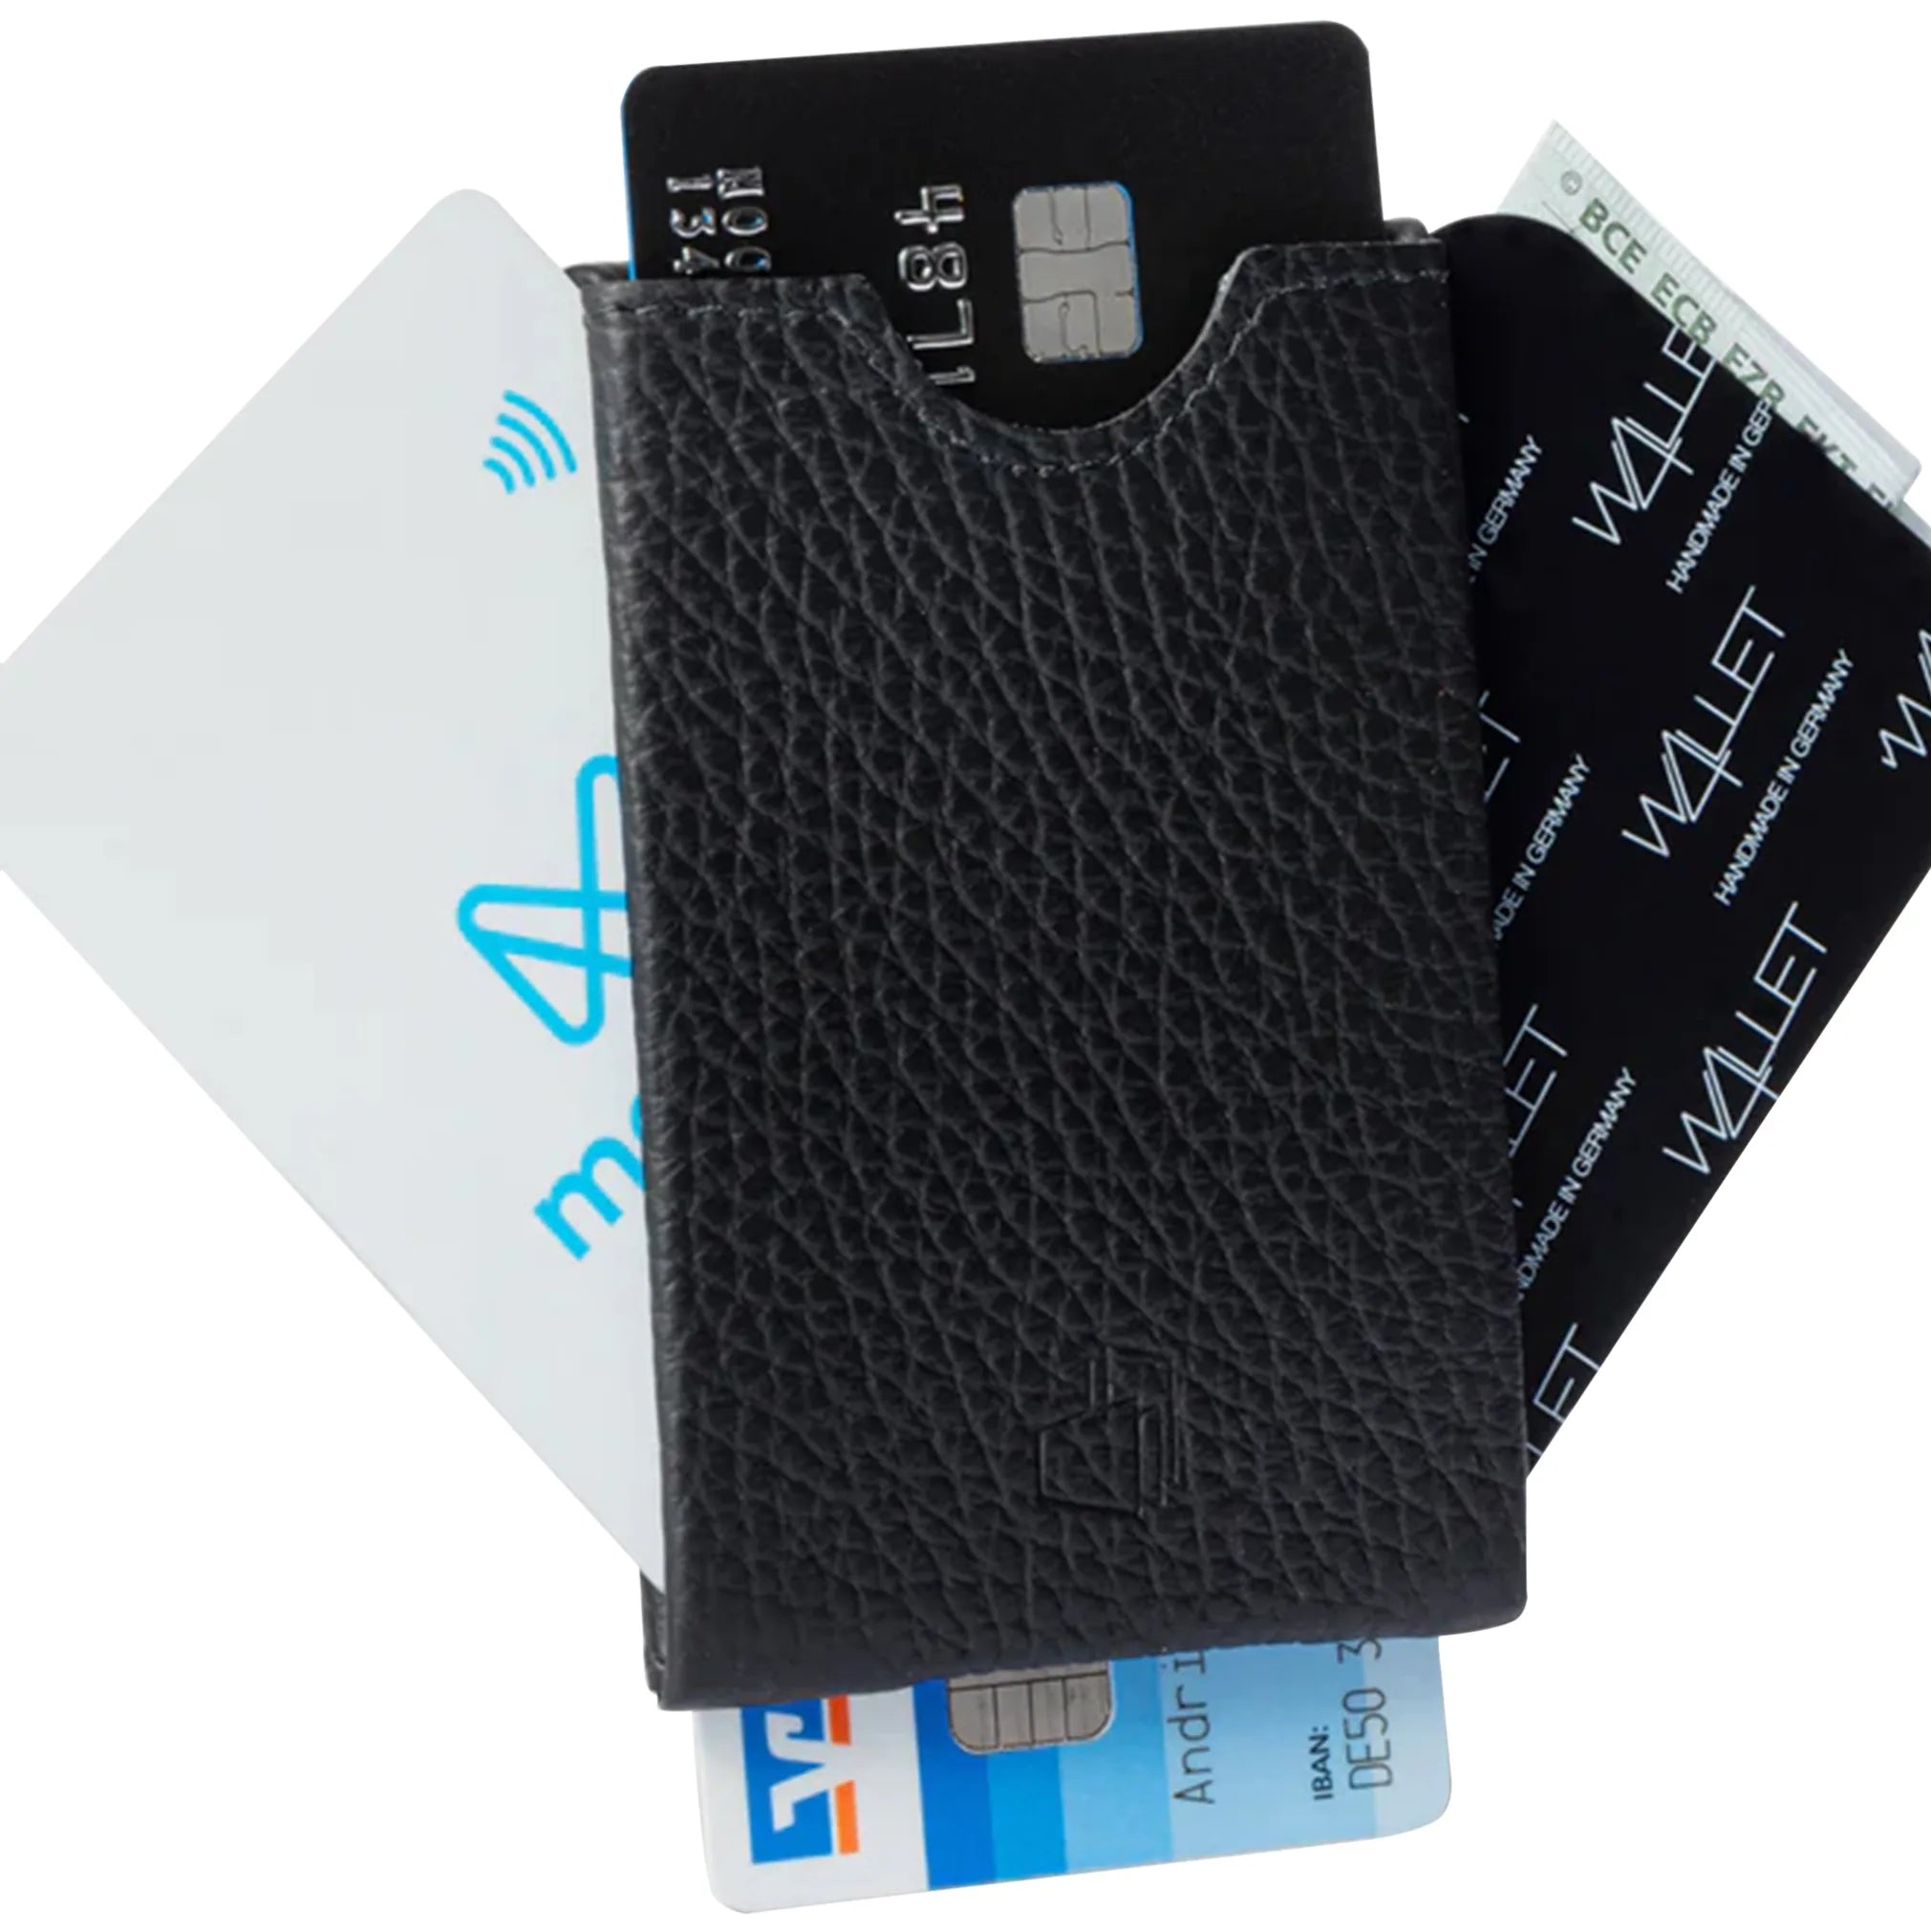 W4llet structured leather credit card holder 9 cm - black